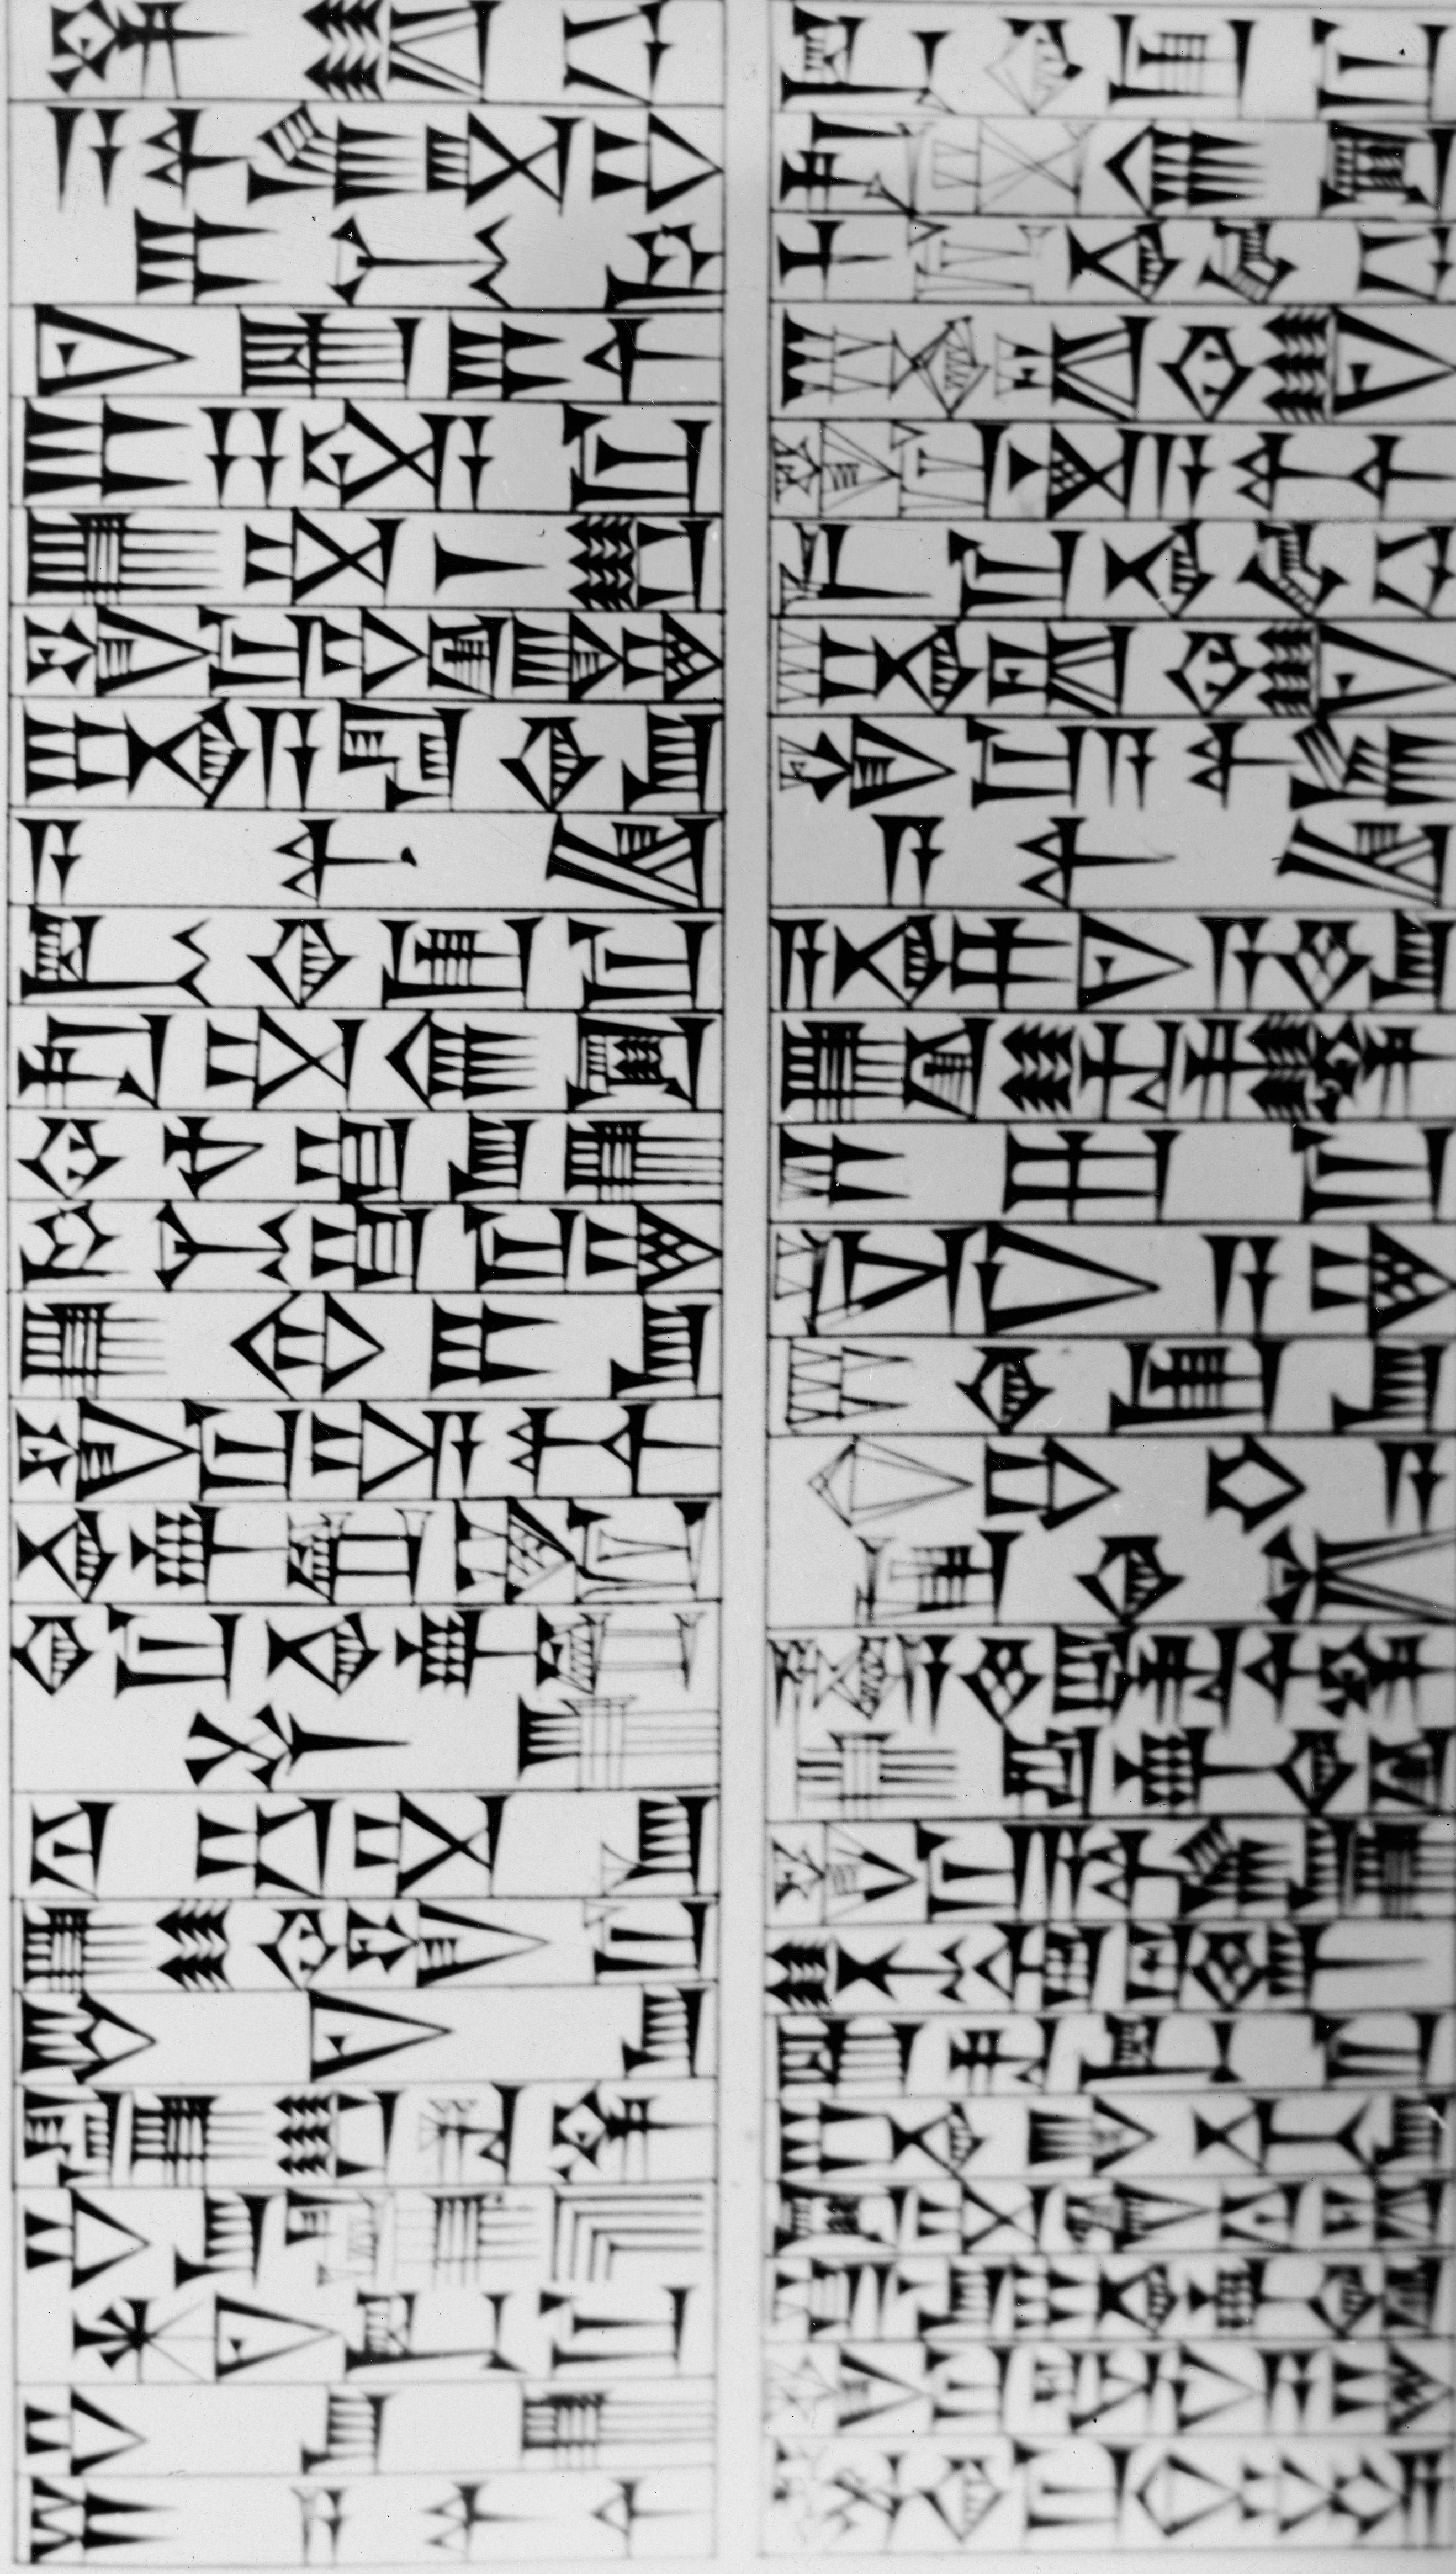 About the Code of Hammurabi